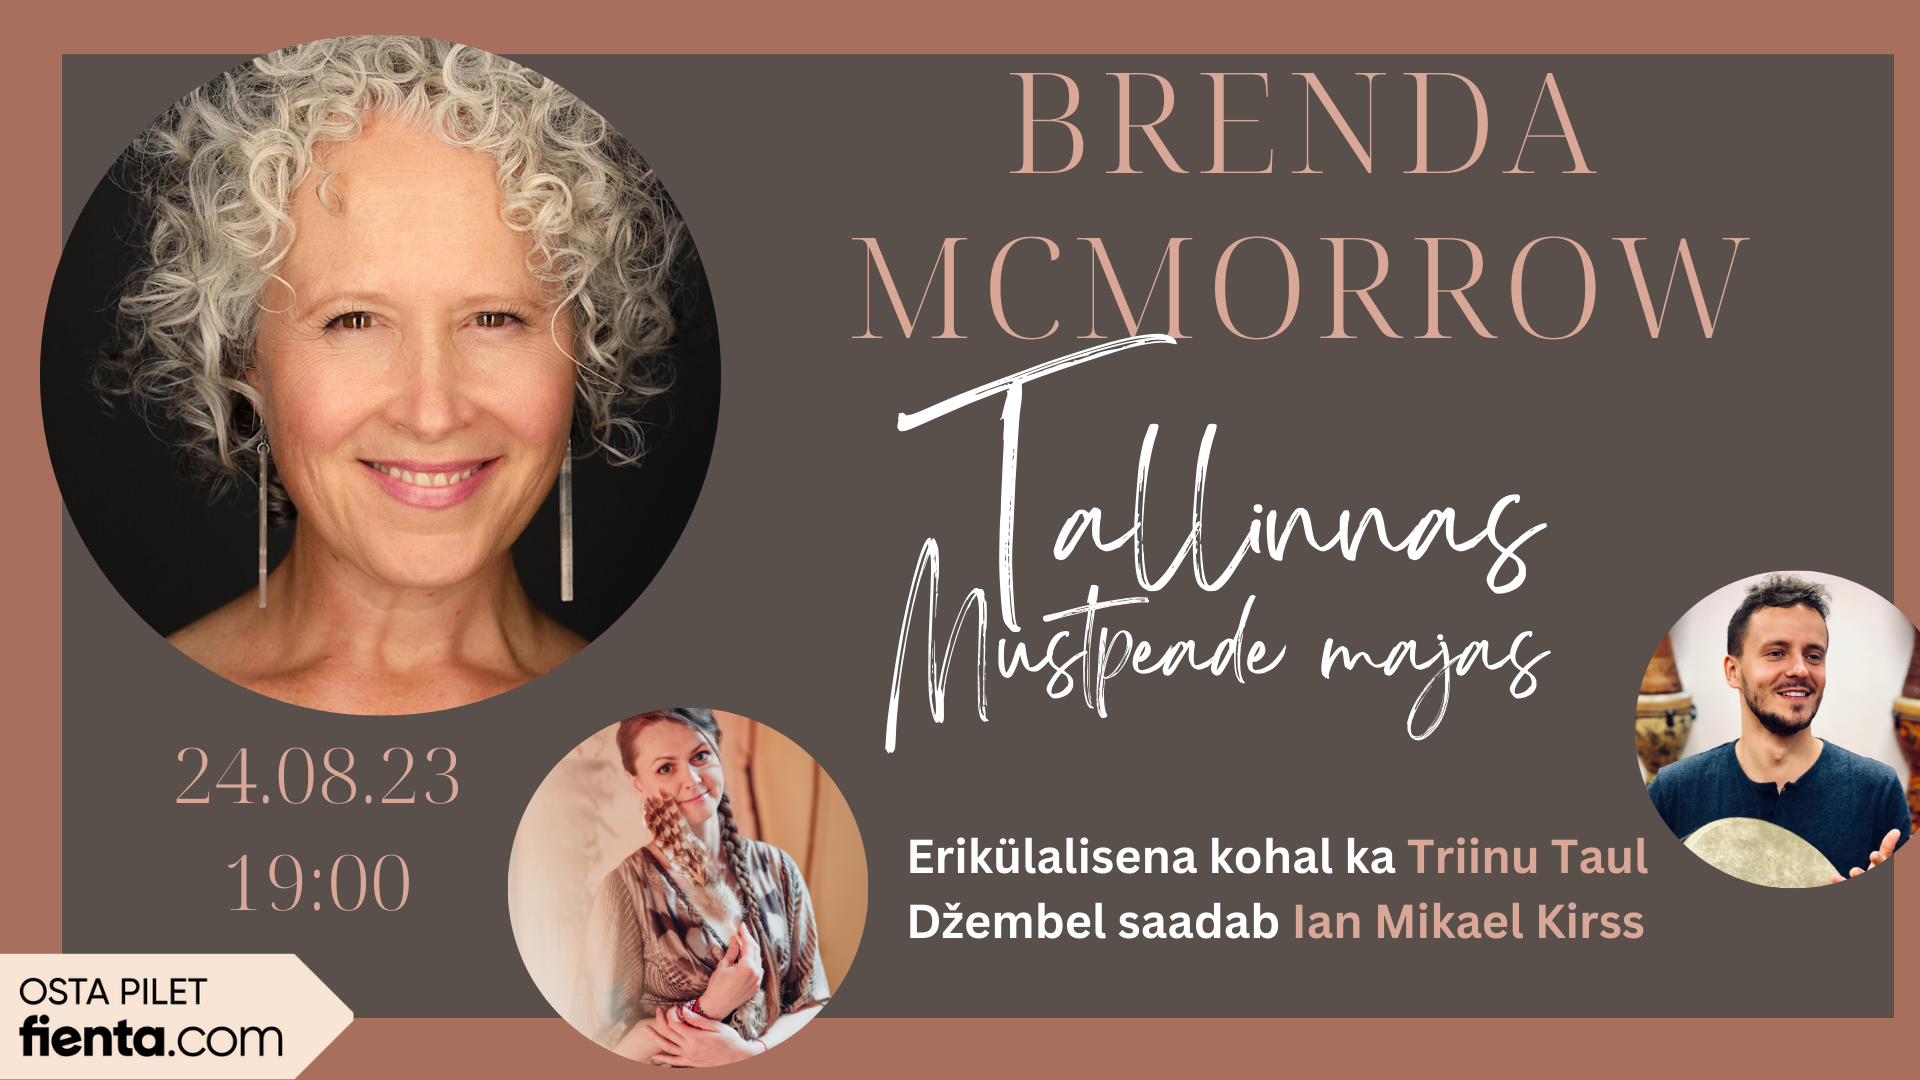 Brenda McMorrow ✲ Erikülalistena Triinu Taul ja Ian Mikael Kirss ✲